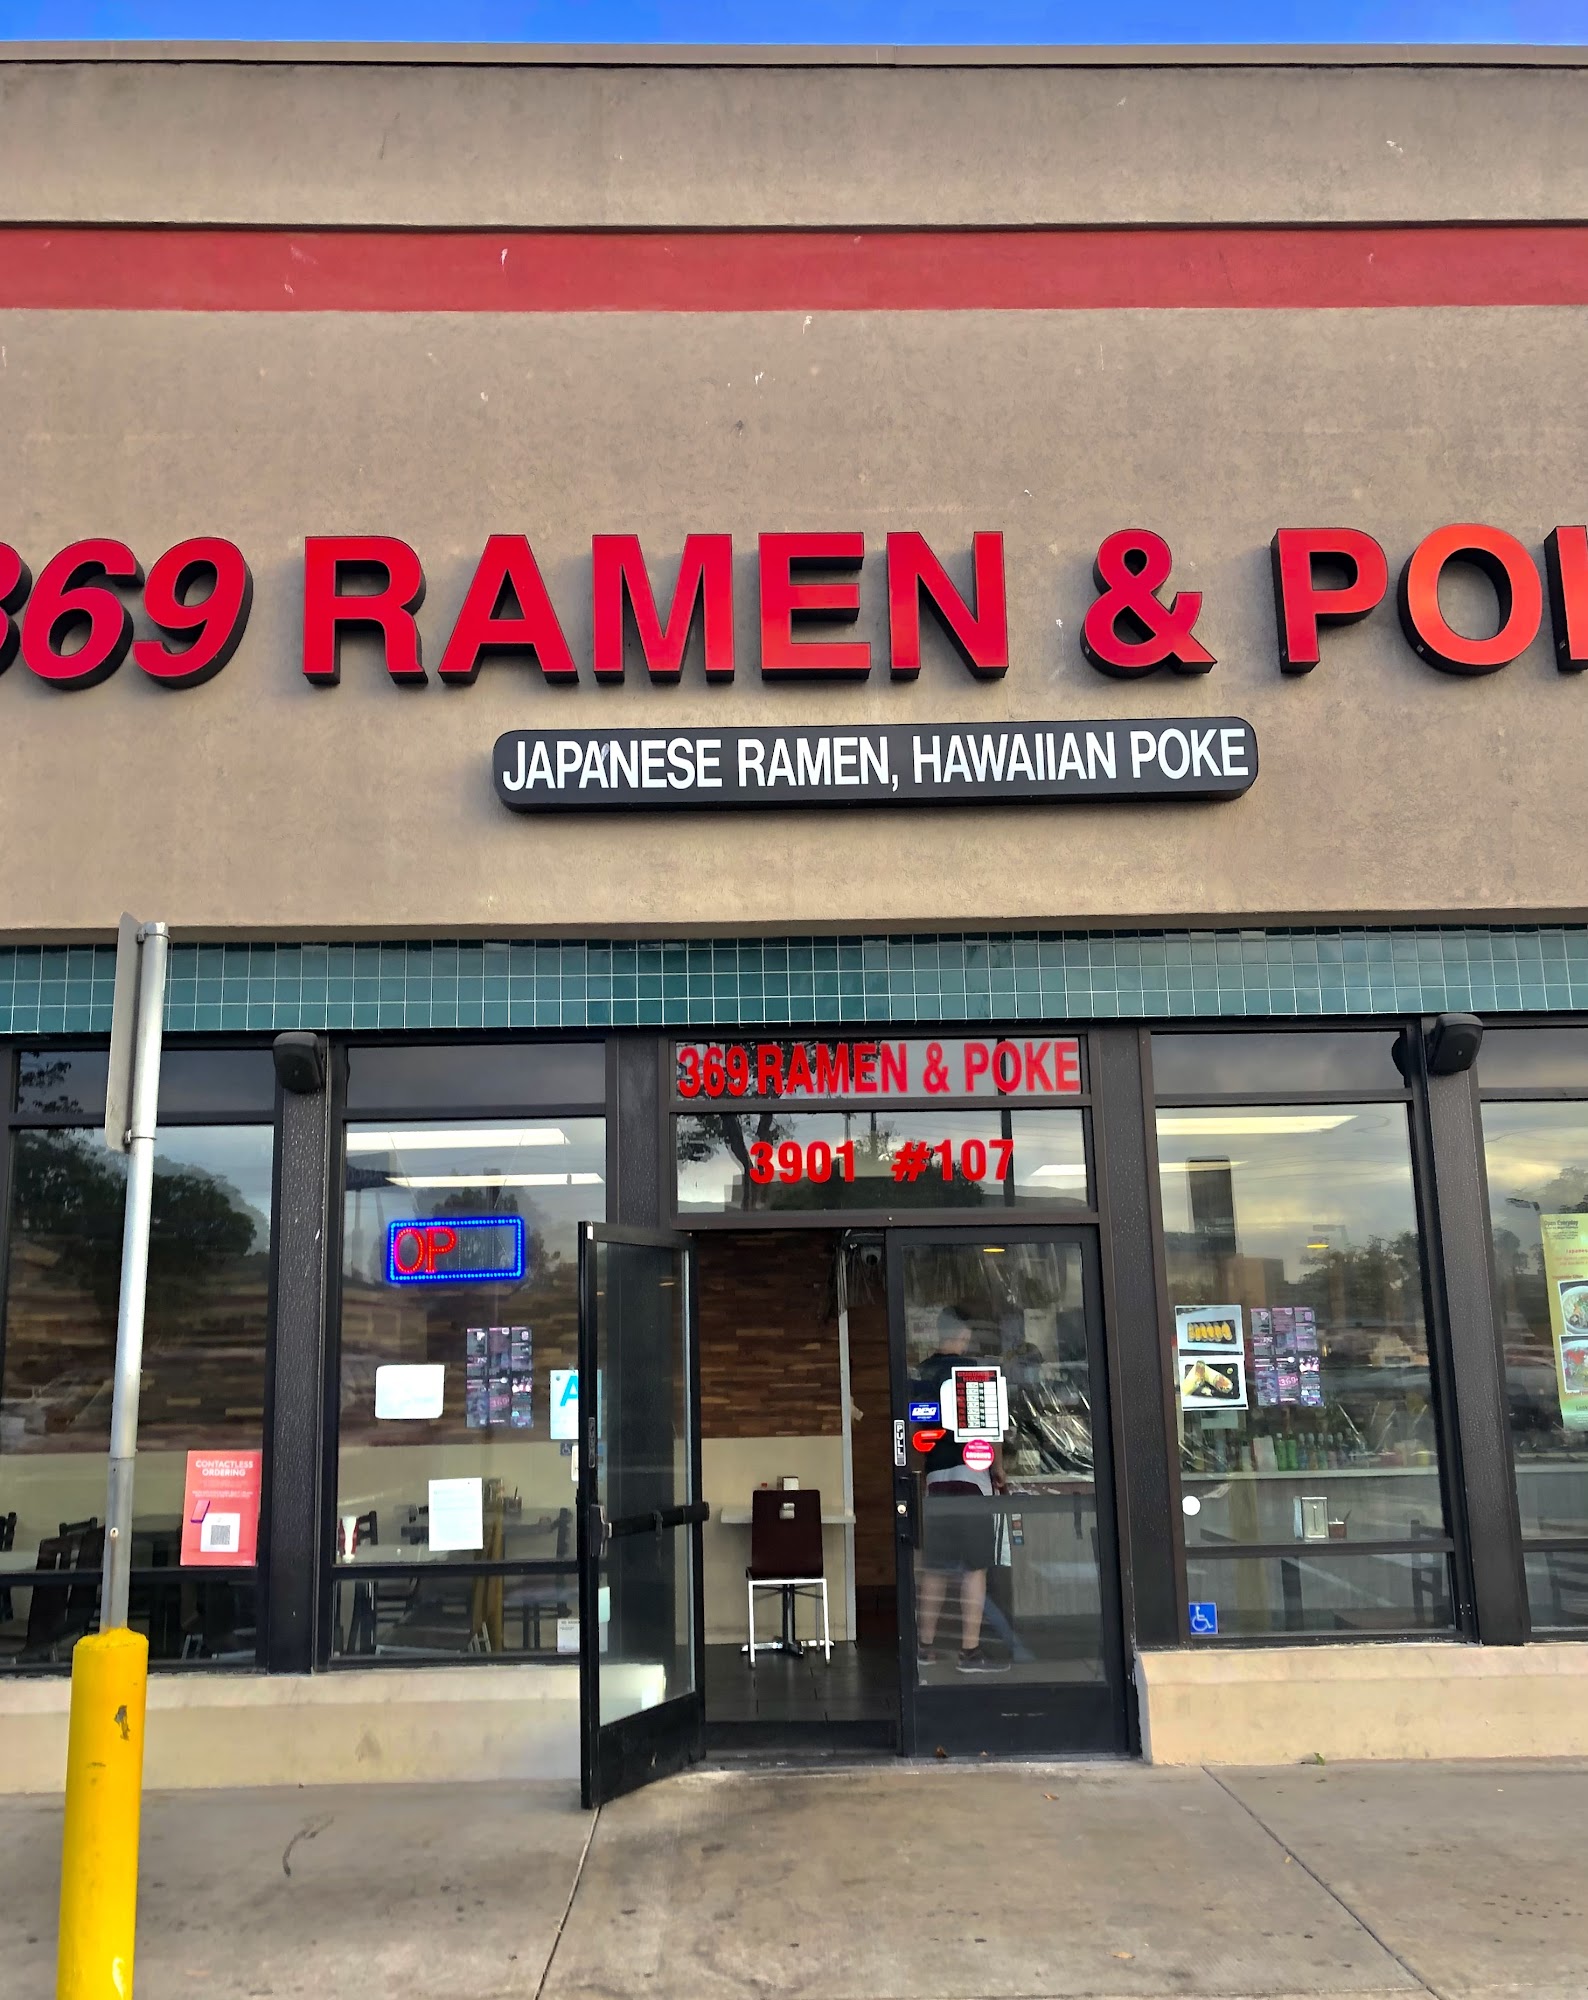 369 Ramen & Poke & Sushi